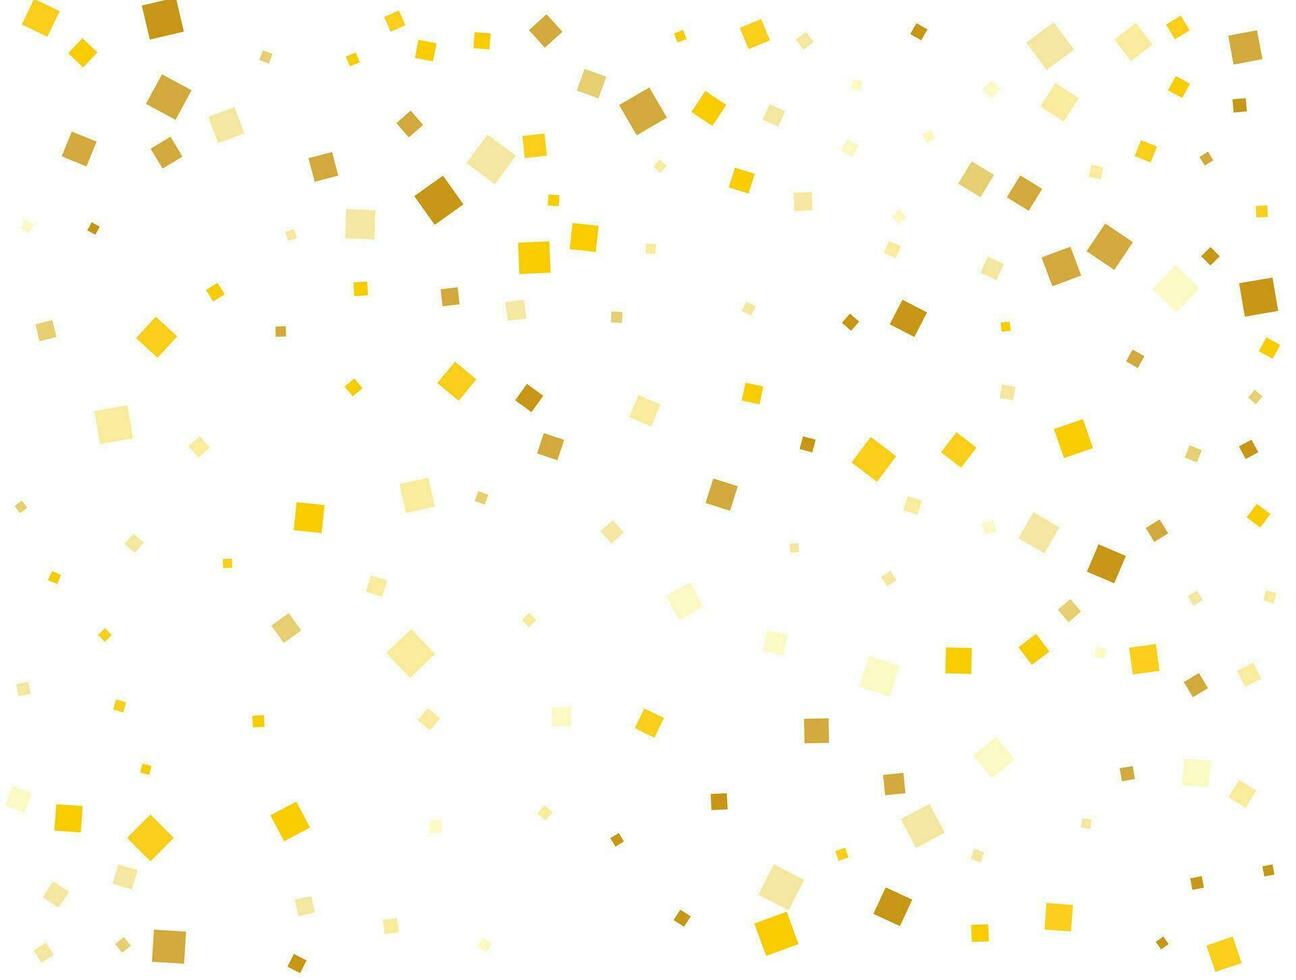 Golden Rain From Square Confetti. Vector illustration